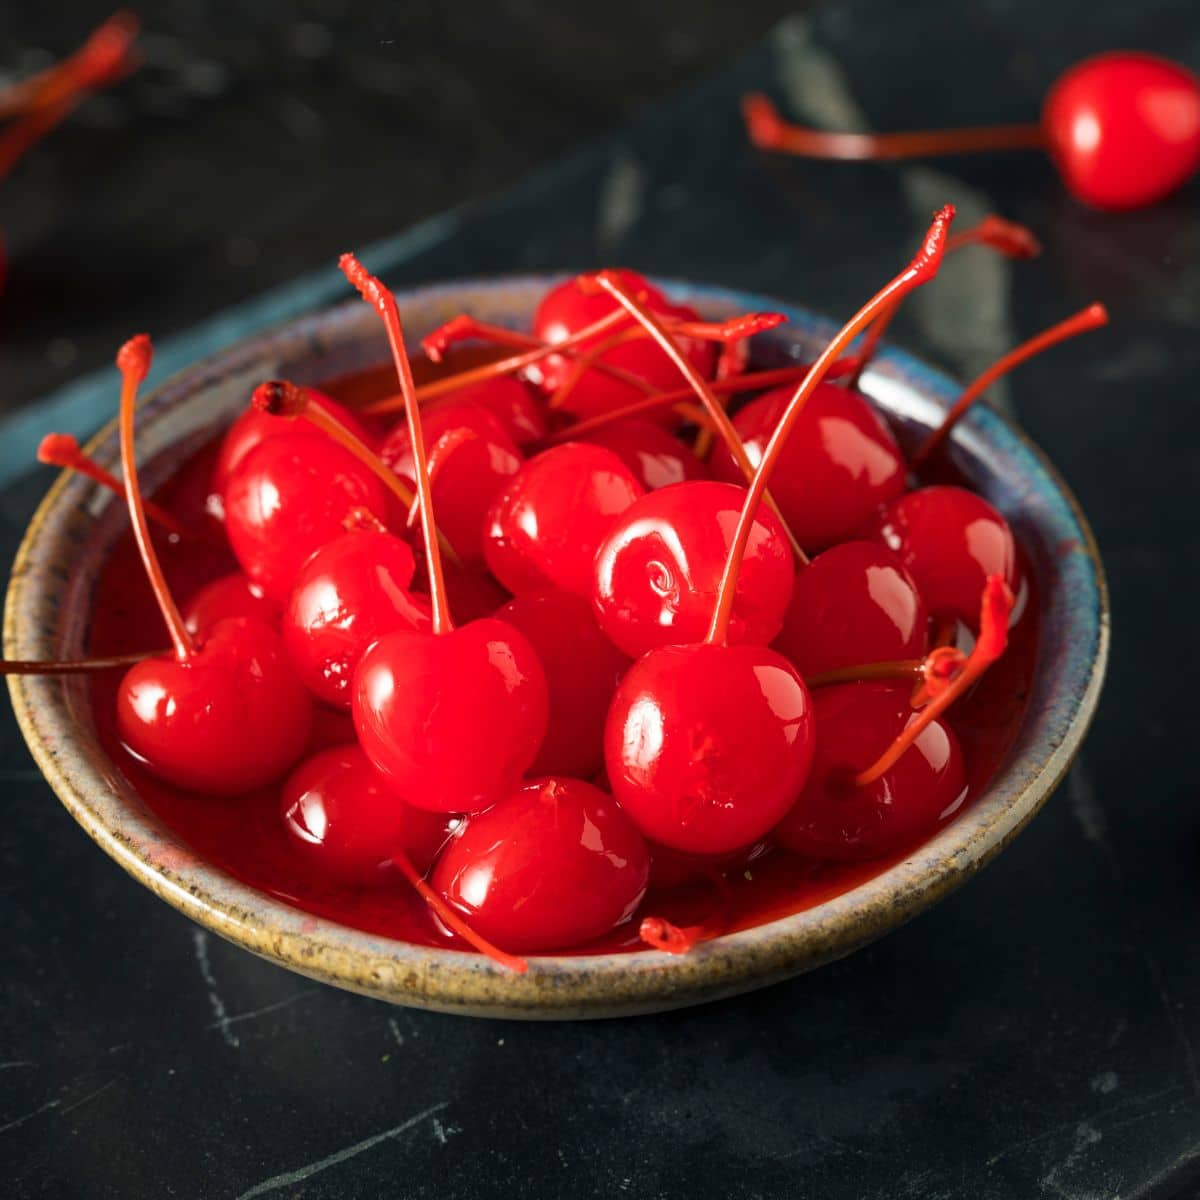 maraschino cherries in a bowl